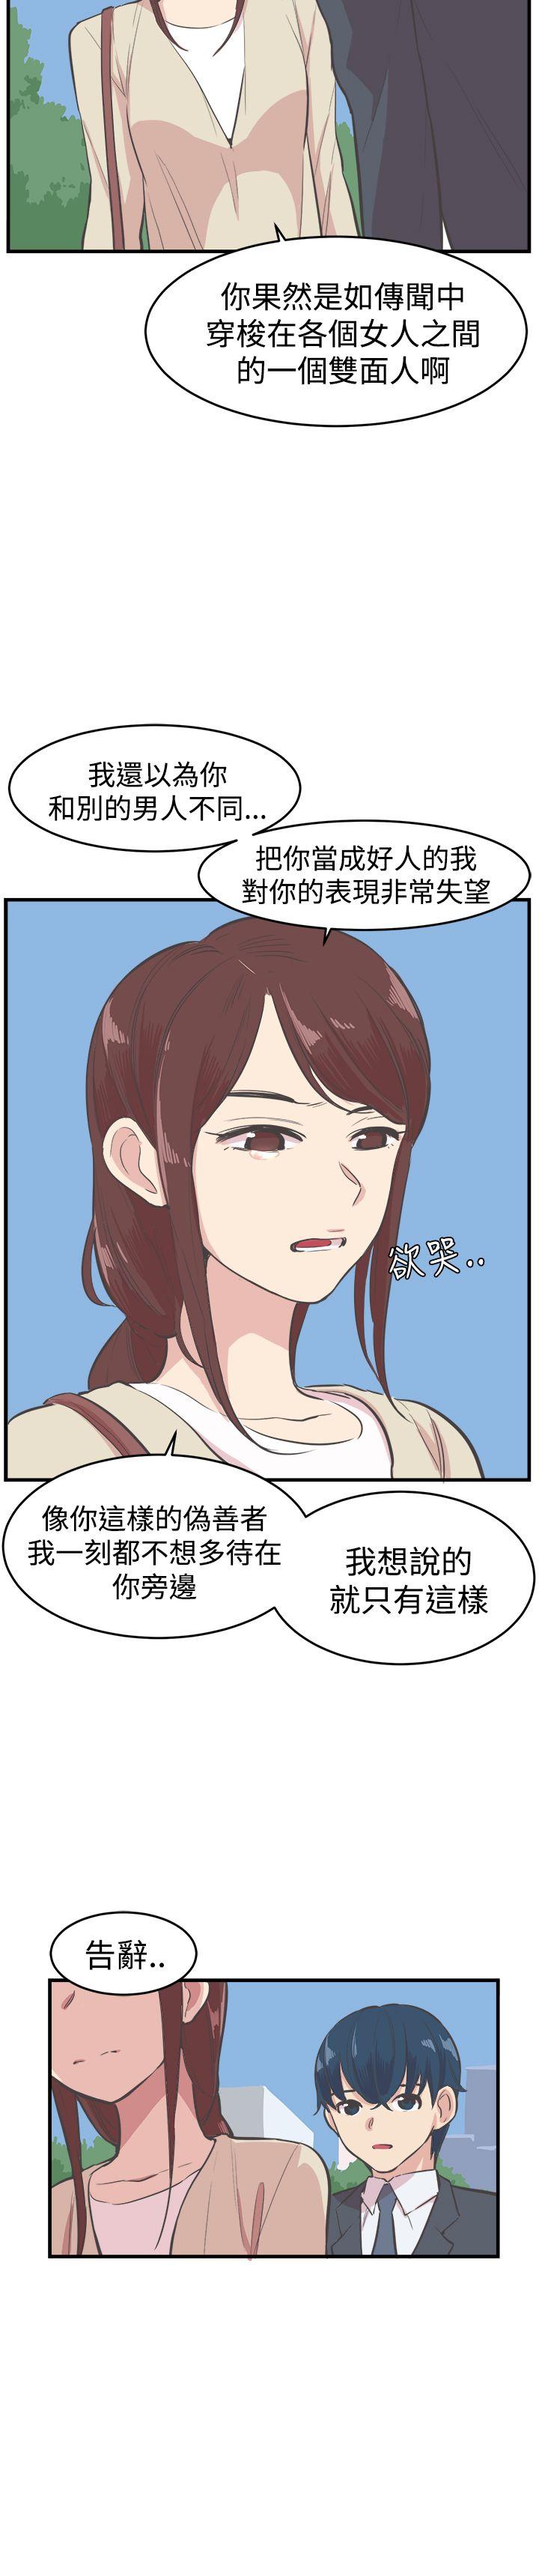 韩国污漫画 青春男女(完結) 第17话 8